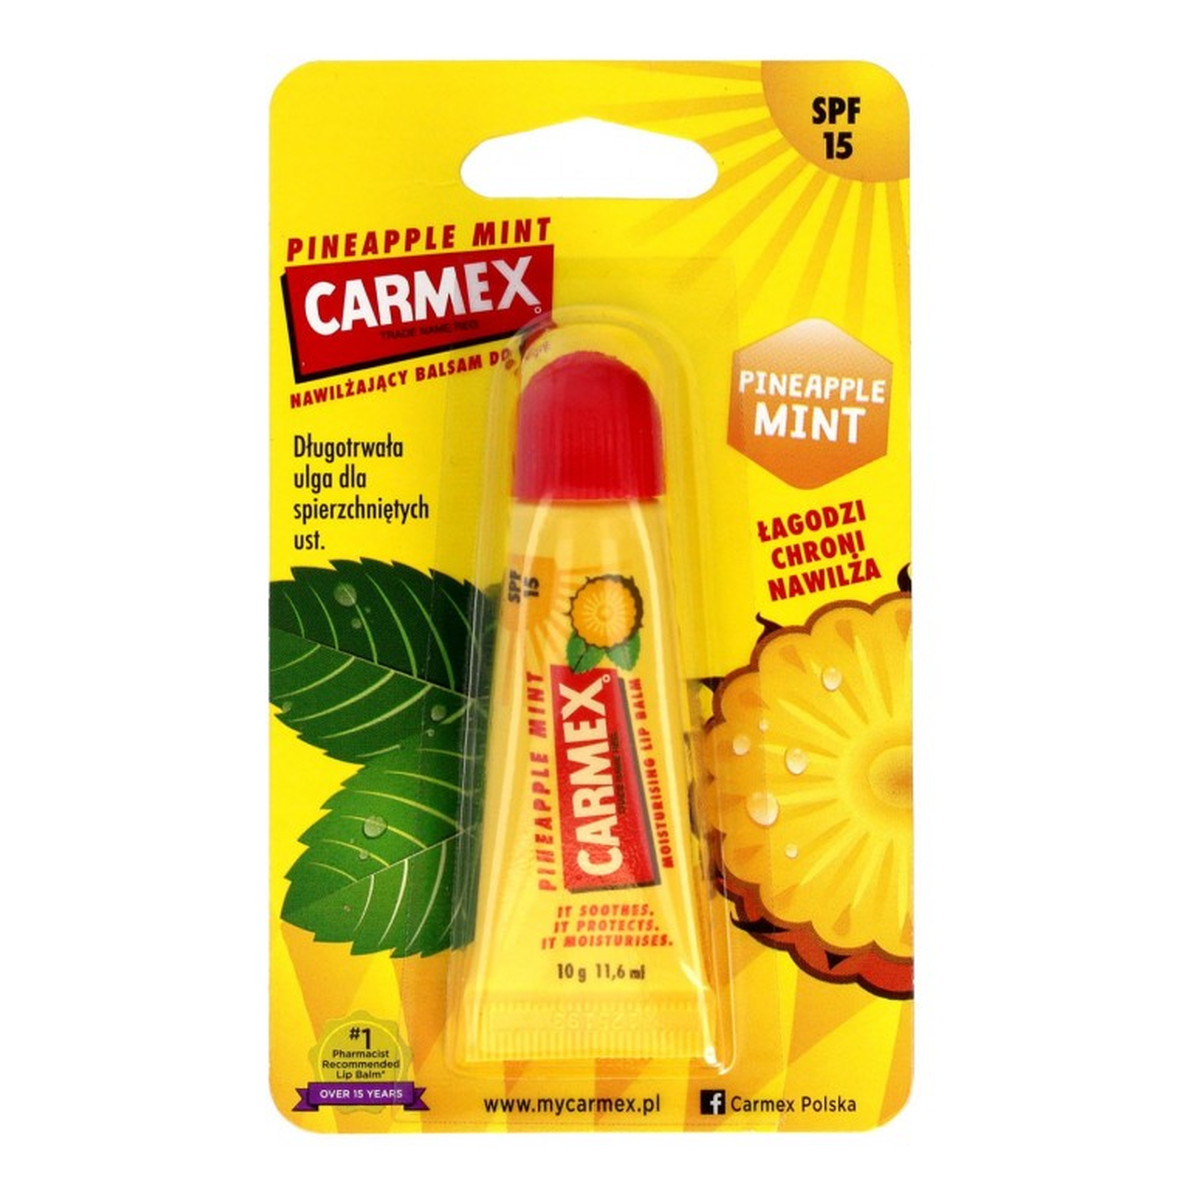 Carmex Balsam do ust nawilżający Pineapple Mint 10g